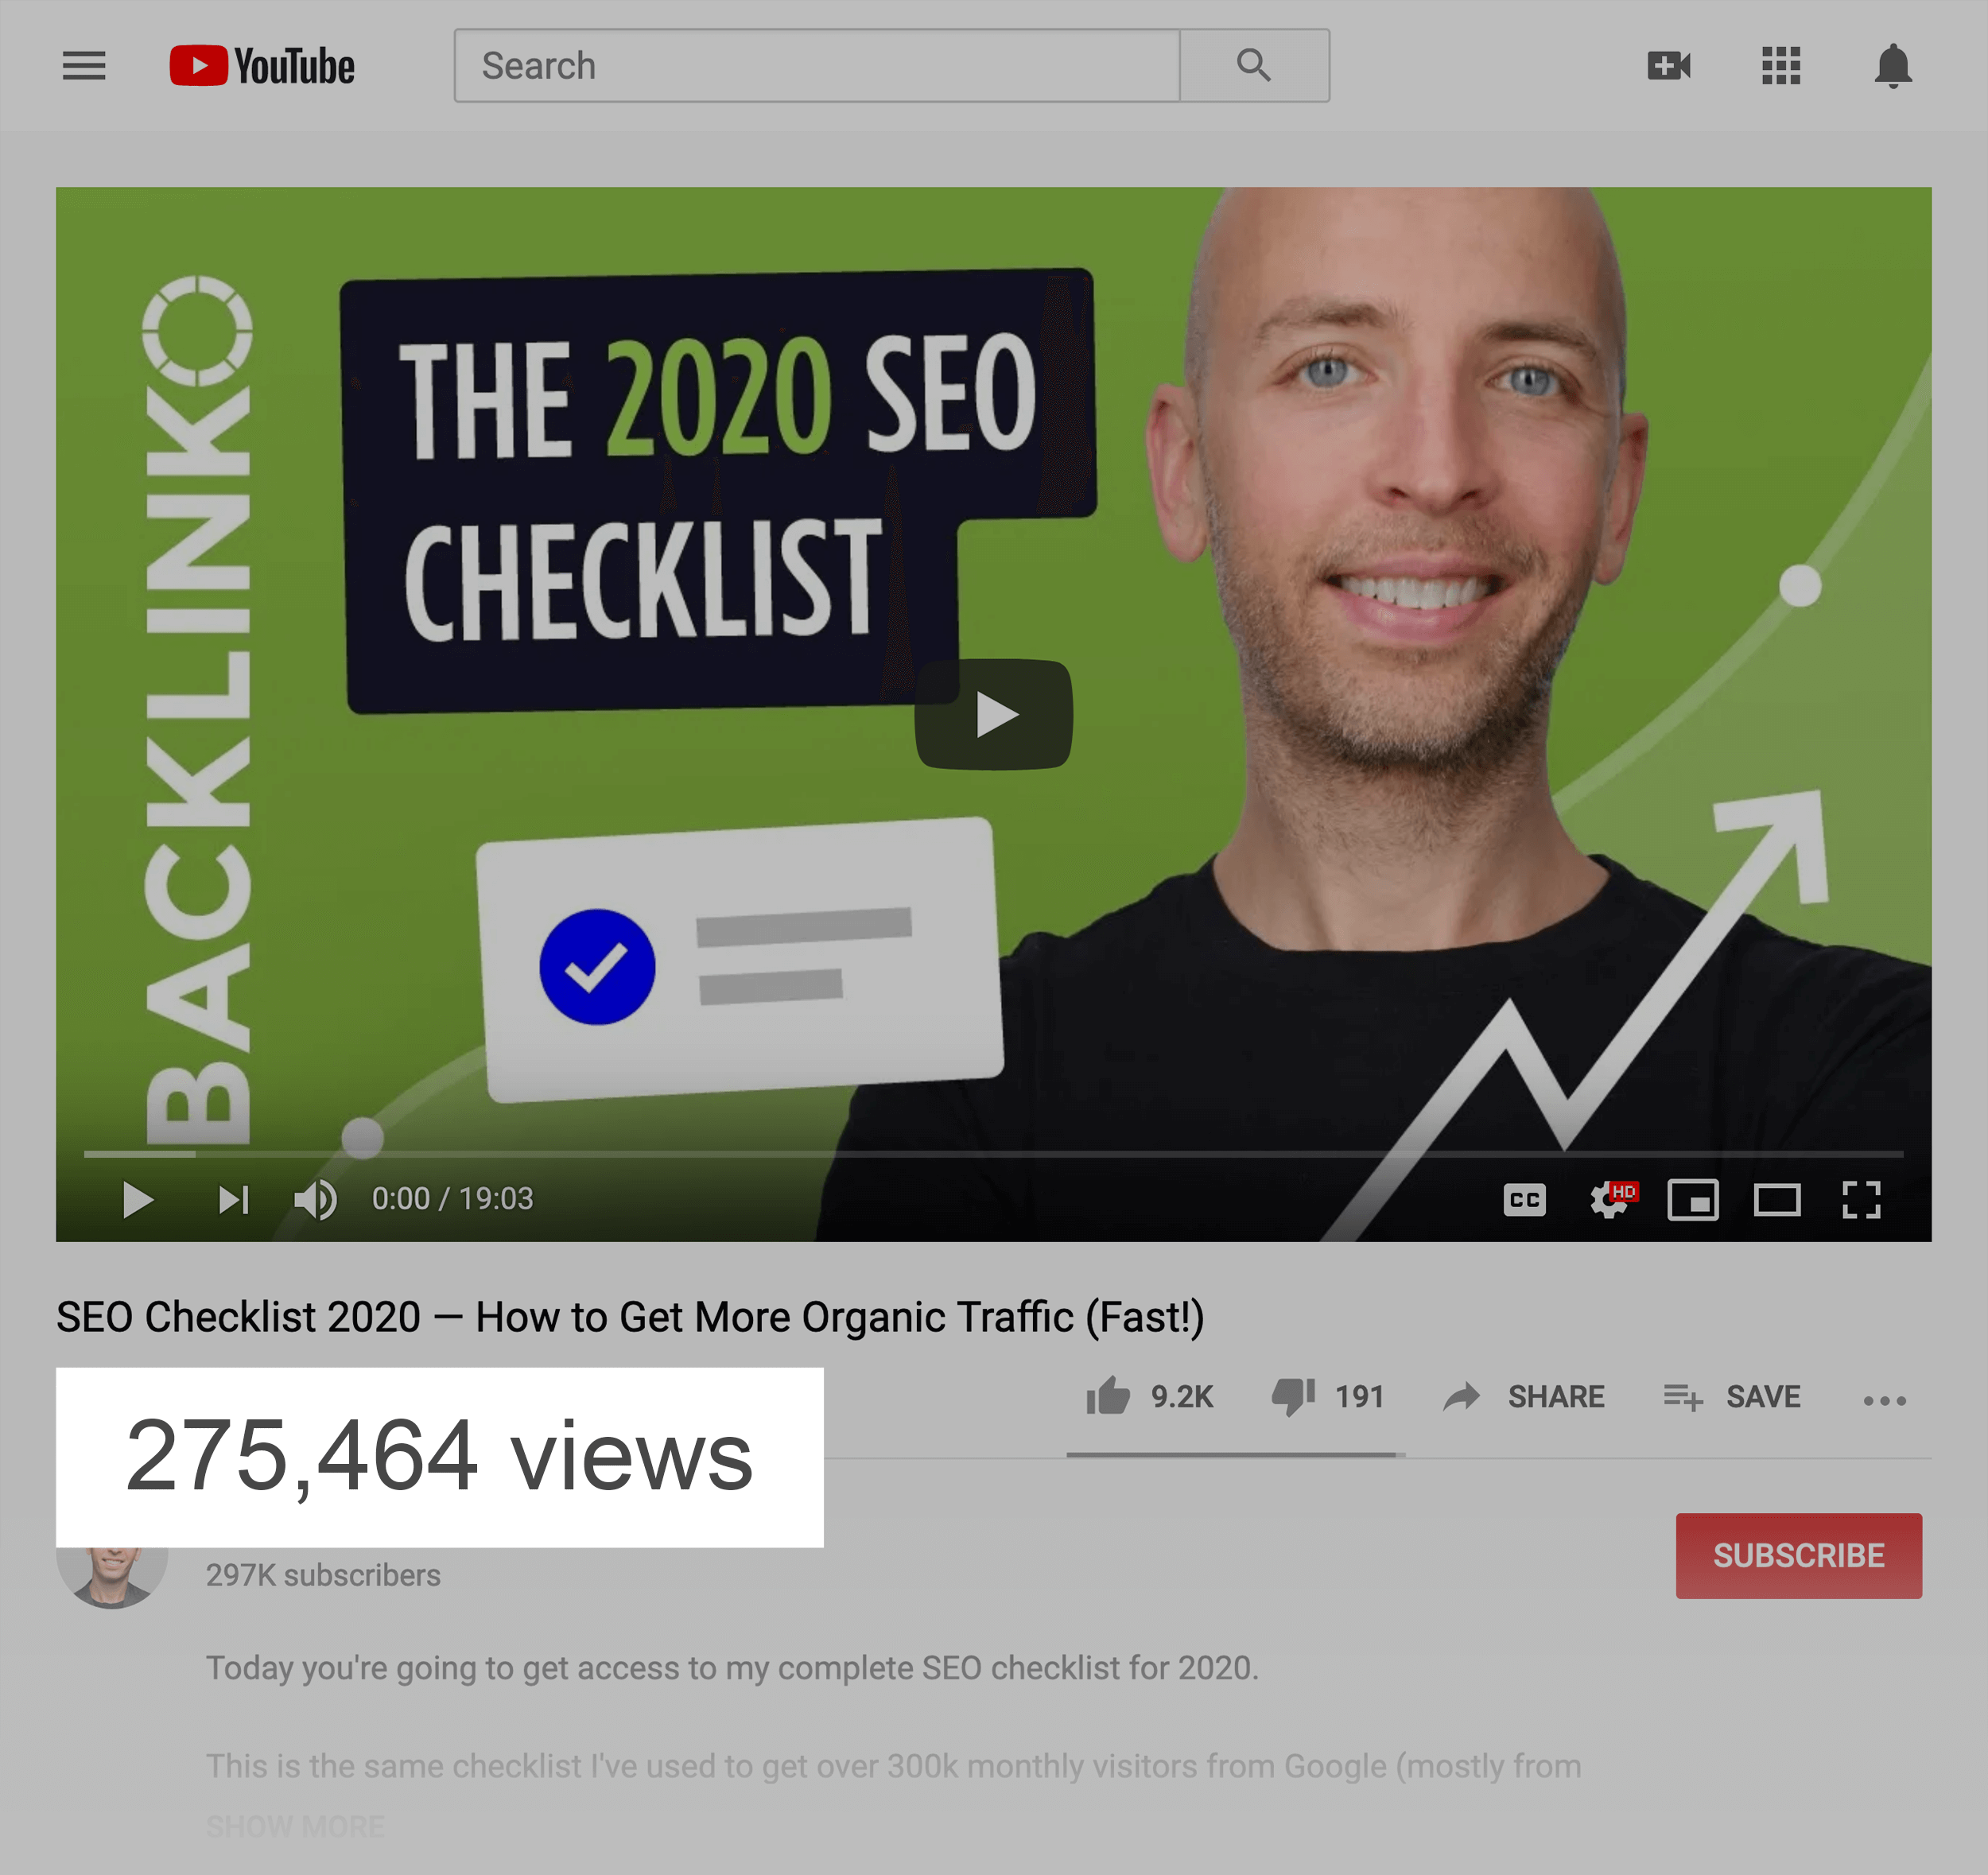 2020 SEO Checklist – Video Total Views